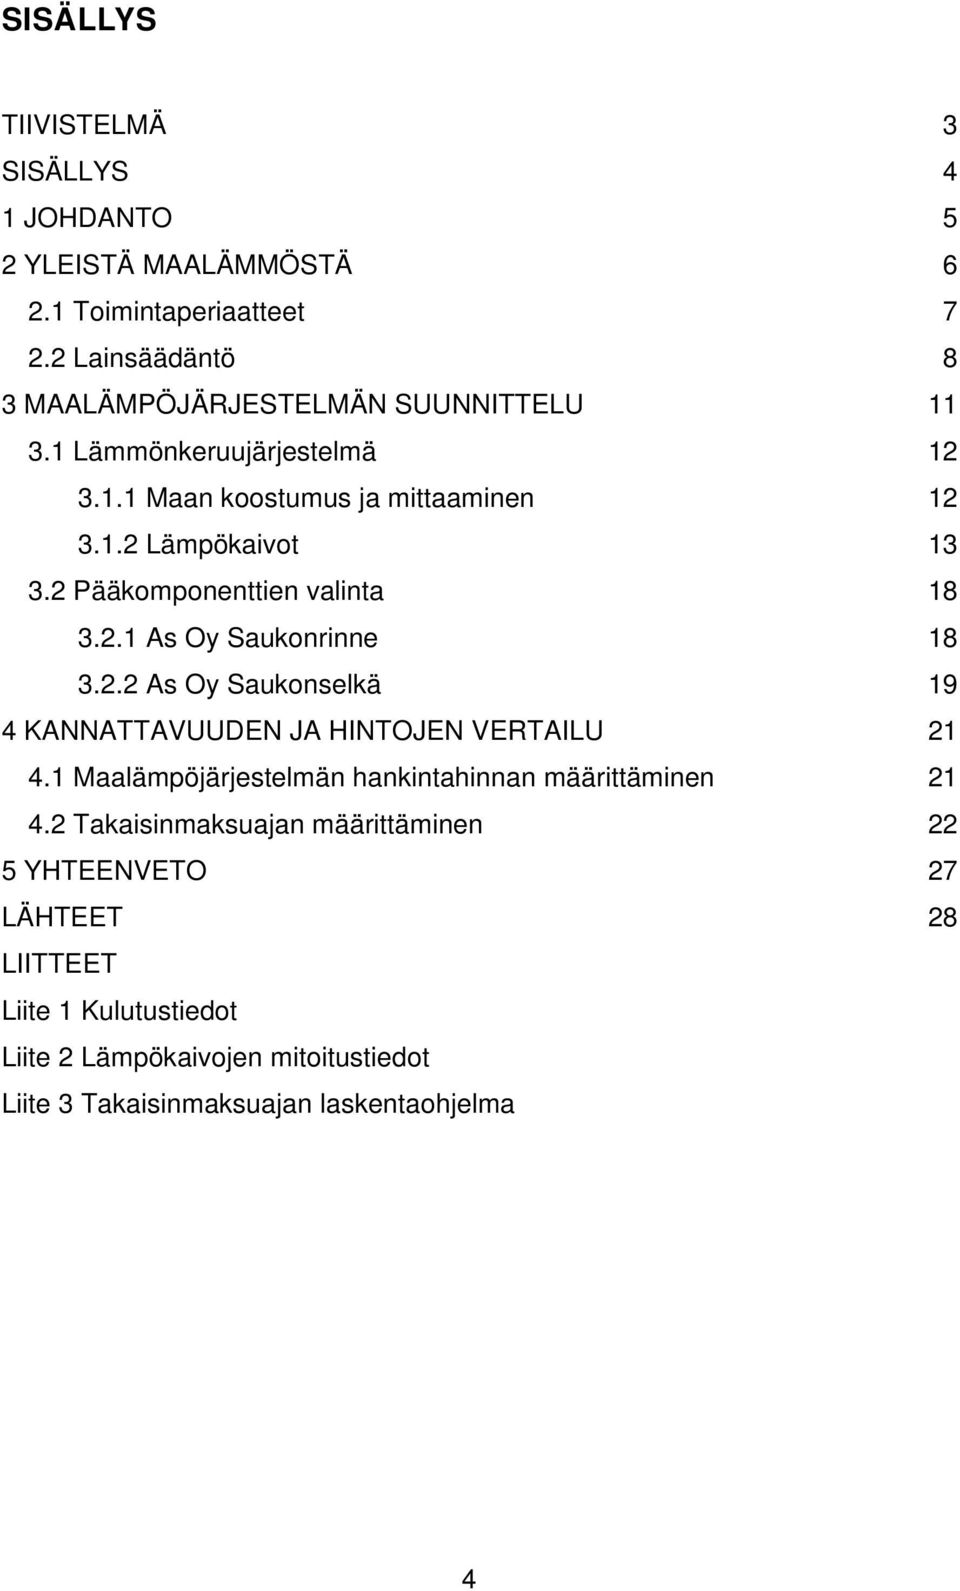 2 Pääkomponenttien valinta 18 3.2.1 As Oy Saukonrinne 18 3.2.2 As Oy Saukonselkä 19 4 KANNATTAVUUDEN JA HINTOJEN VERTAILU 21 4.